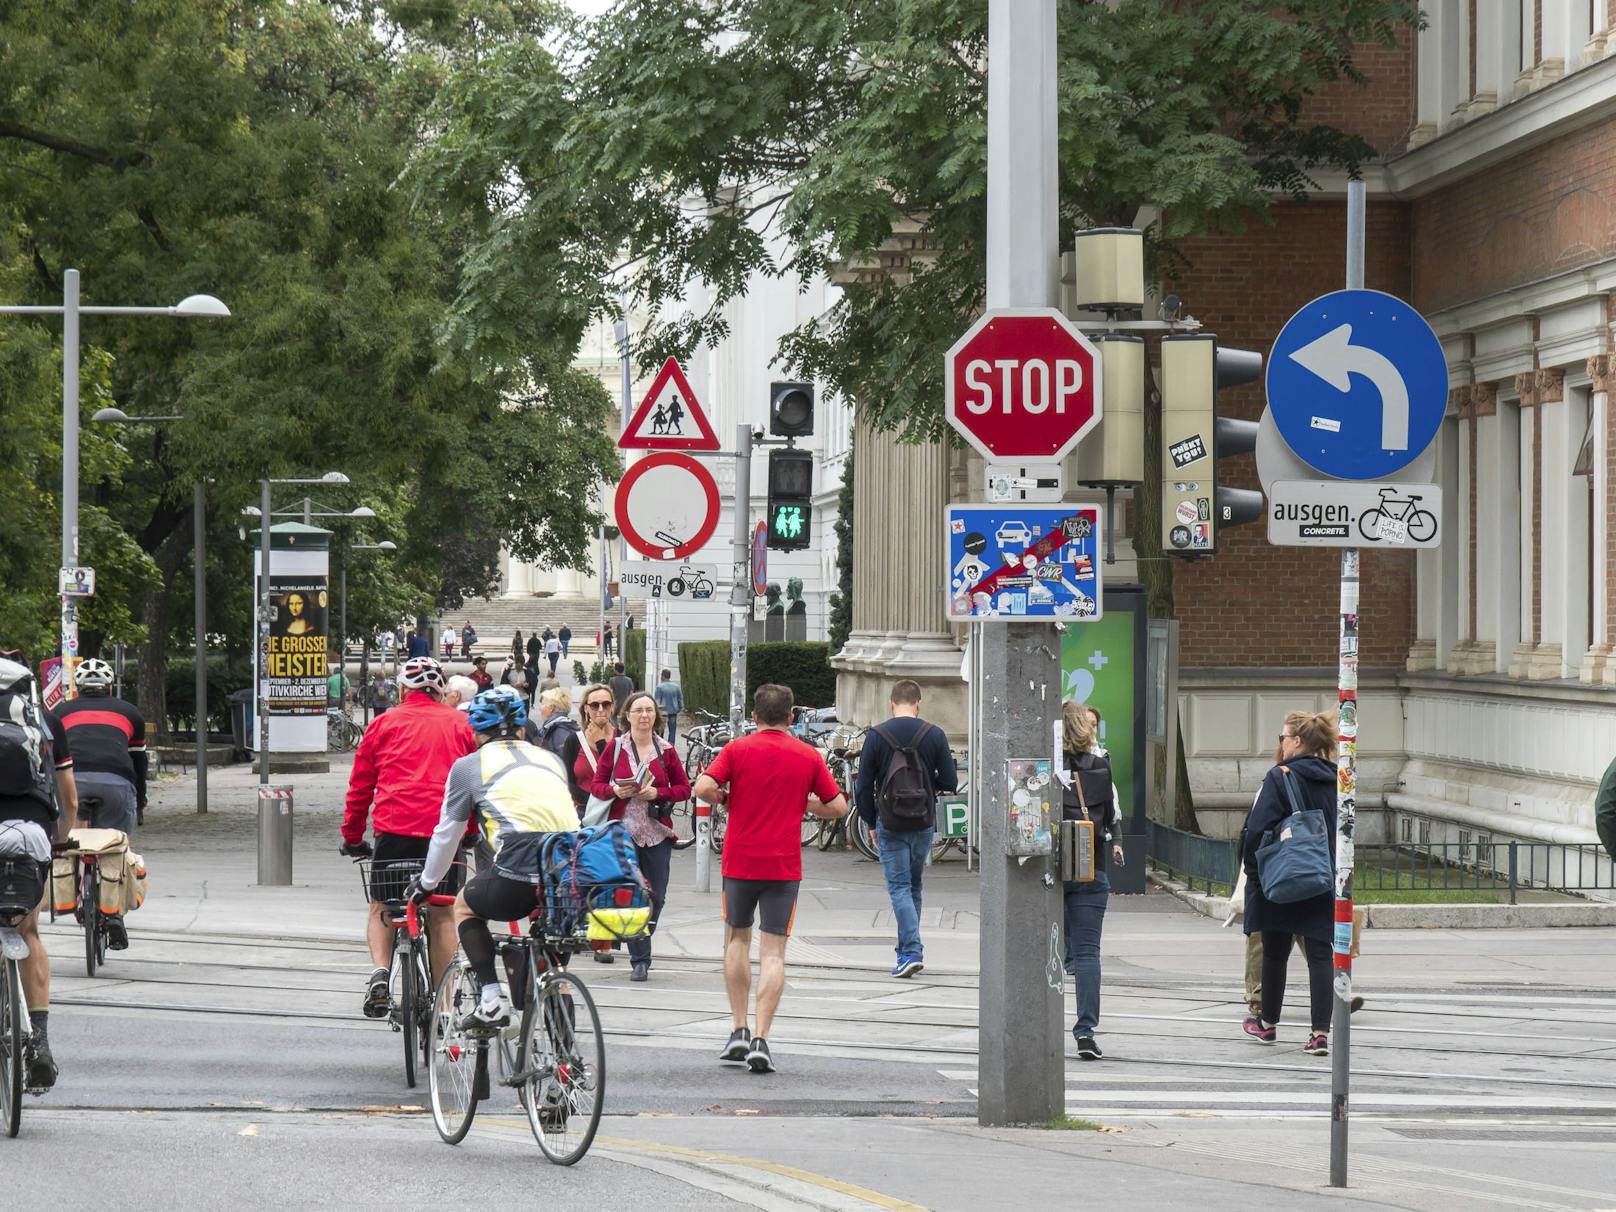 Viele Schilder und eine Ampel. Dass die nur für Fußgänger gilt und sich Radfahrer an die Stop-Tafel halten müssen, ist für viele nicht ersichtlich.